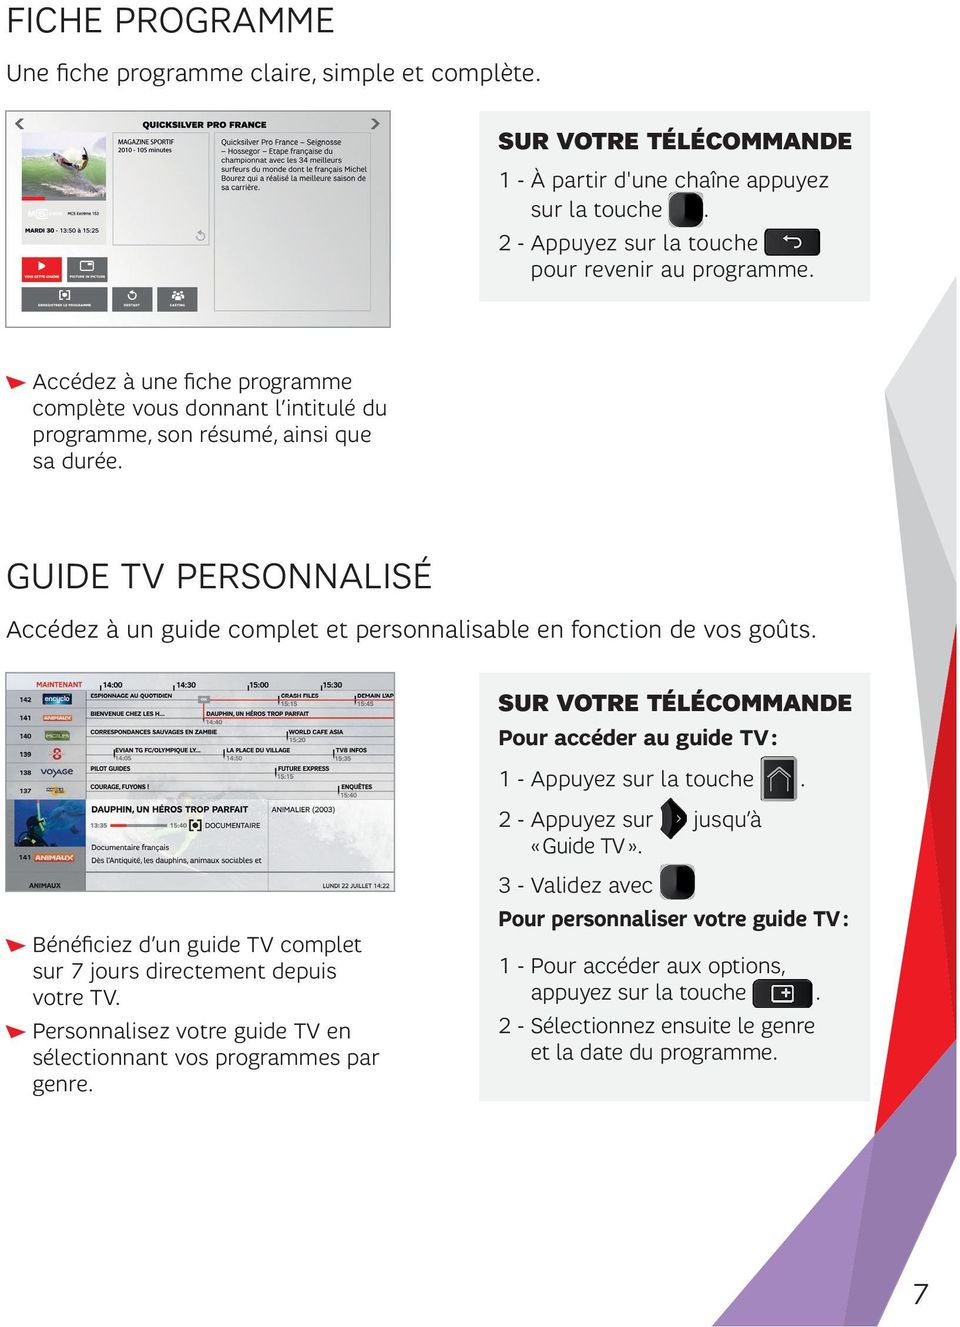 GUIDE TV PERSONNALISÉ Accédez à un guide complet et personnalisable en fonction de vos goûts. Pour accéder au guide TV : 1 - Appuyez sur la touche. 2 - Appuyez sur jusqu à «Guide TV».